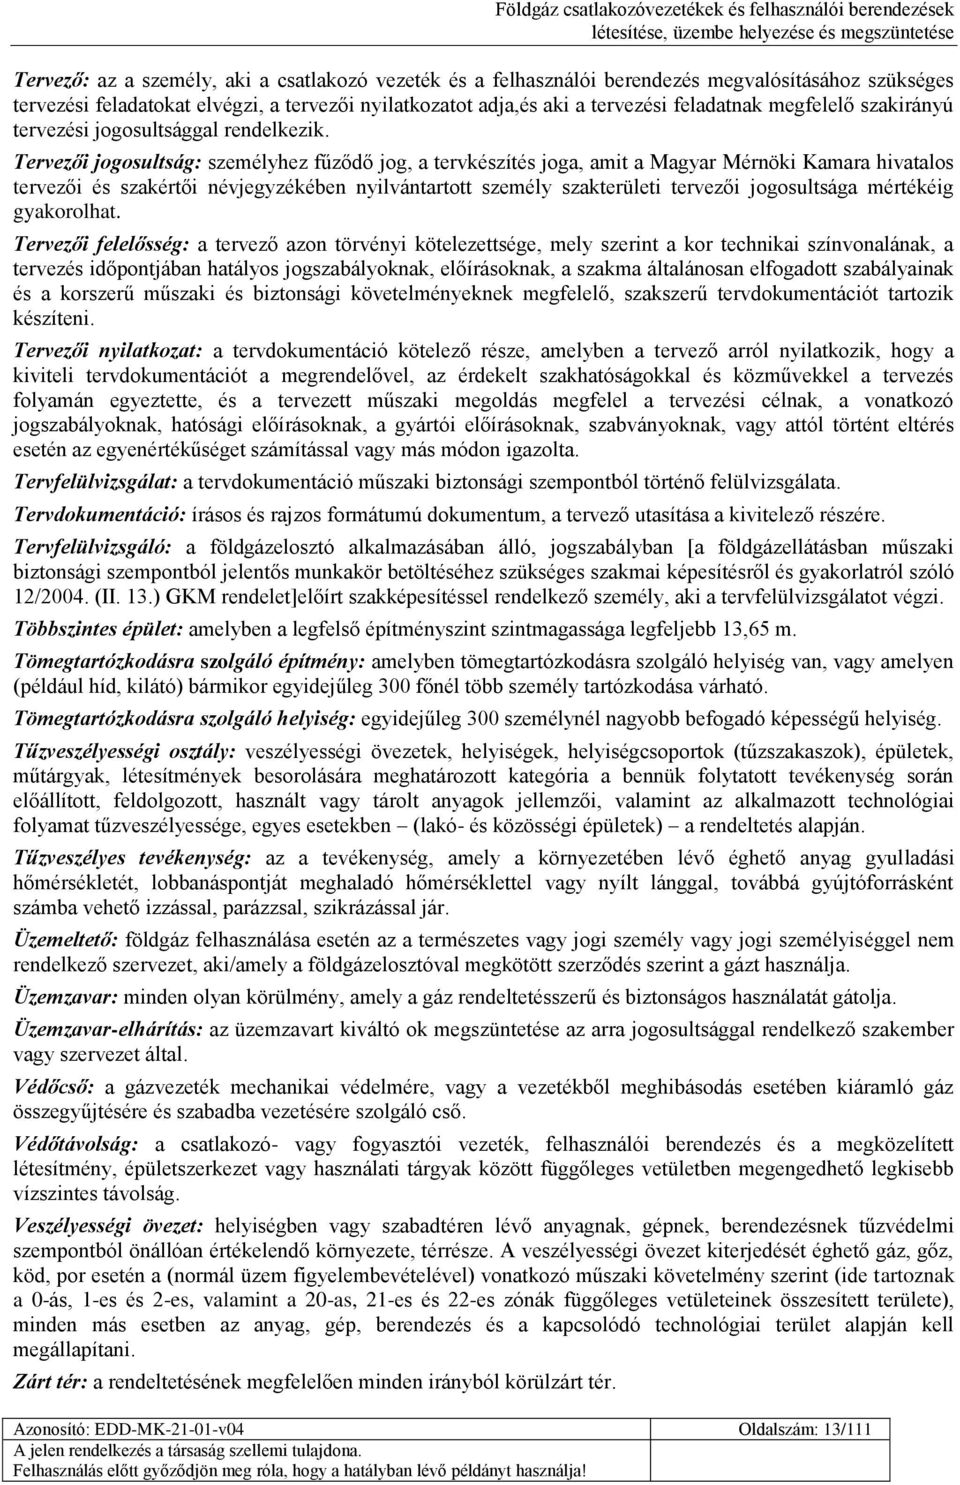 Tervezői jogosultság: személyhez fűződő jog, a tervkészítés joga, amit a Magyar Mérnöki Kamara hivatalos tervezői és szakértői névjegyzékében nyilvántartott személy szakterületi tervezői jogosultsága